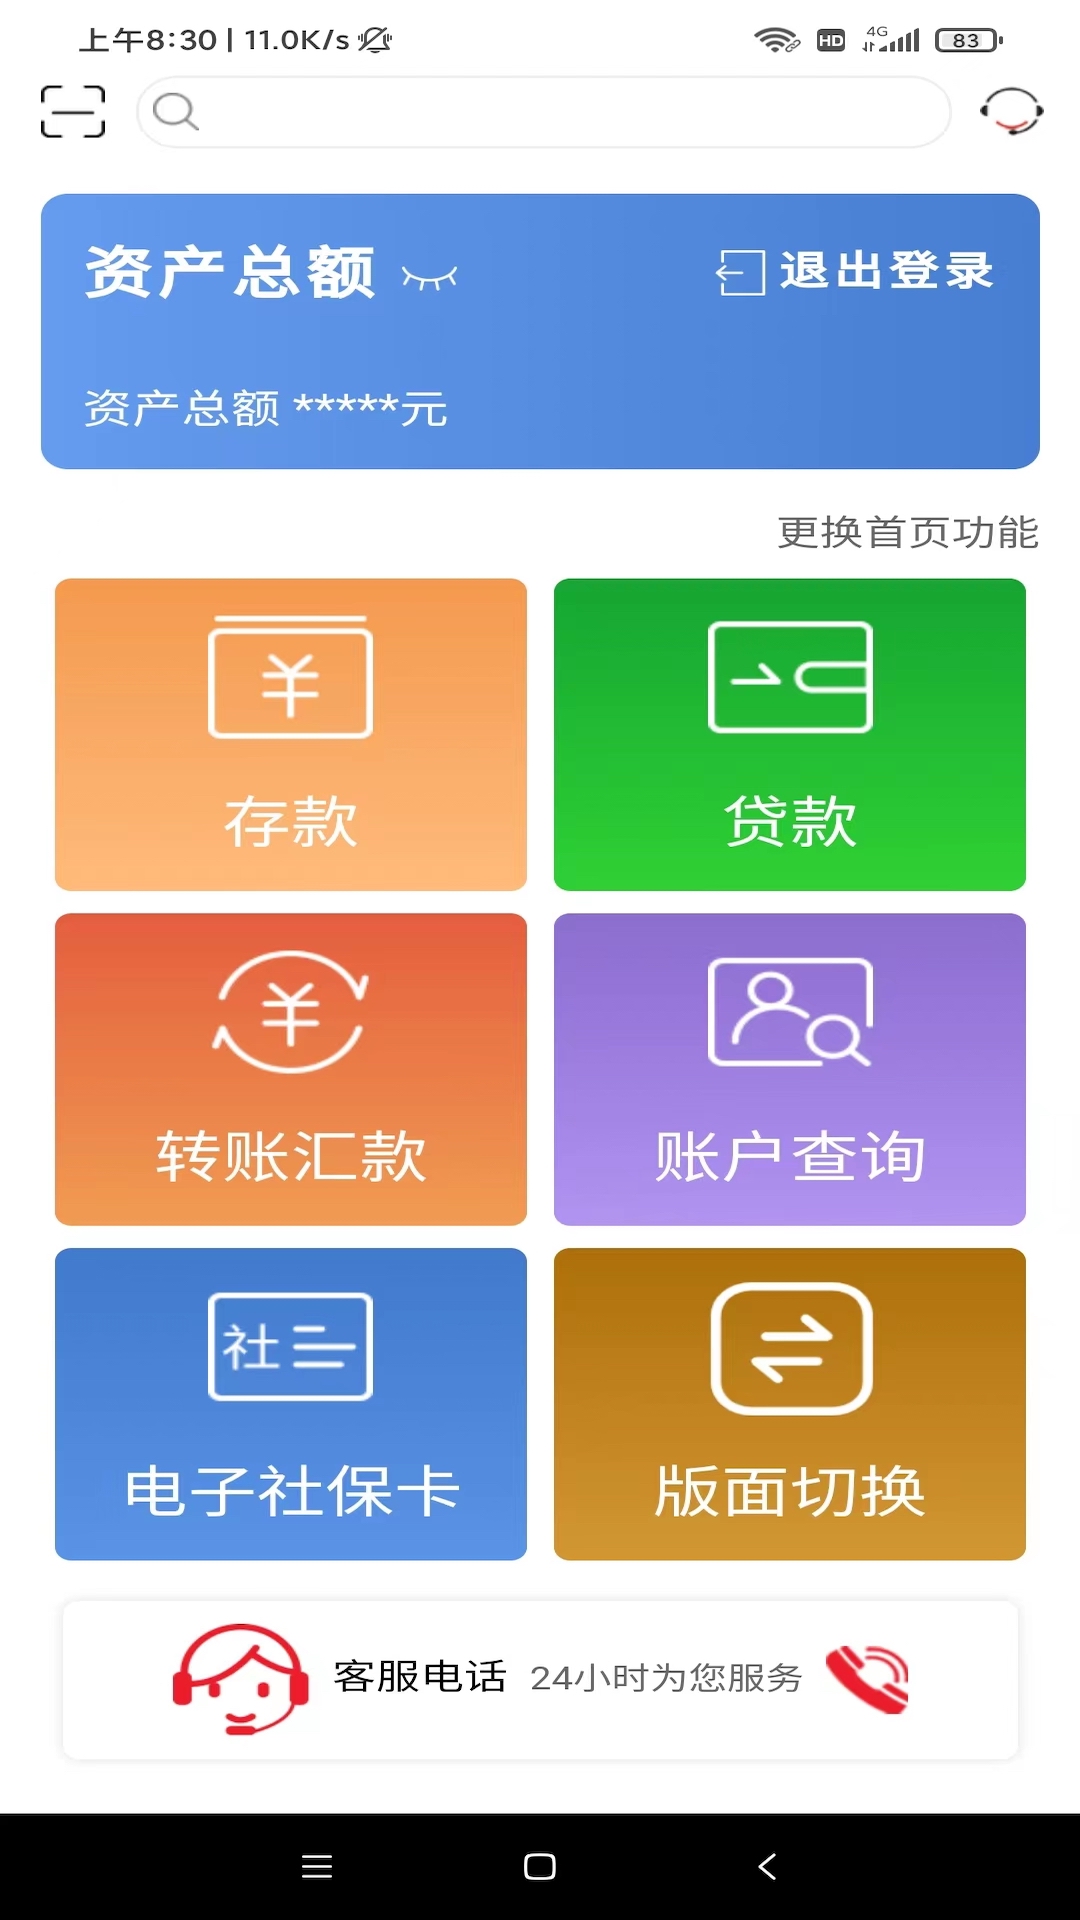 山东农信app最新版下载 v5.1.7